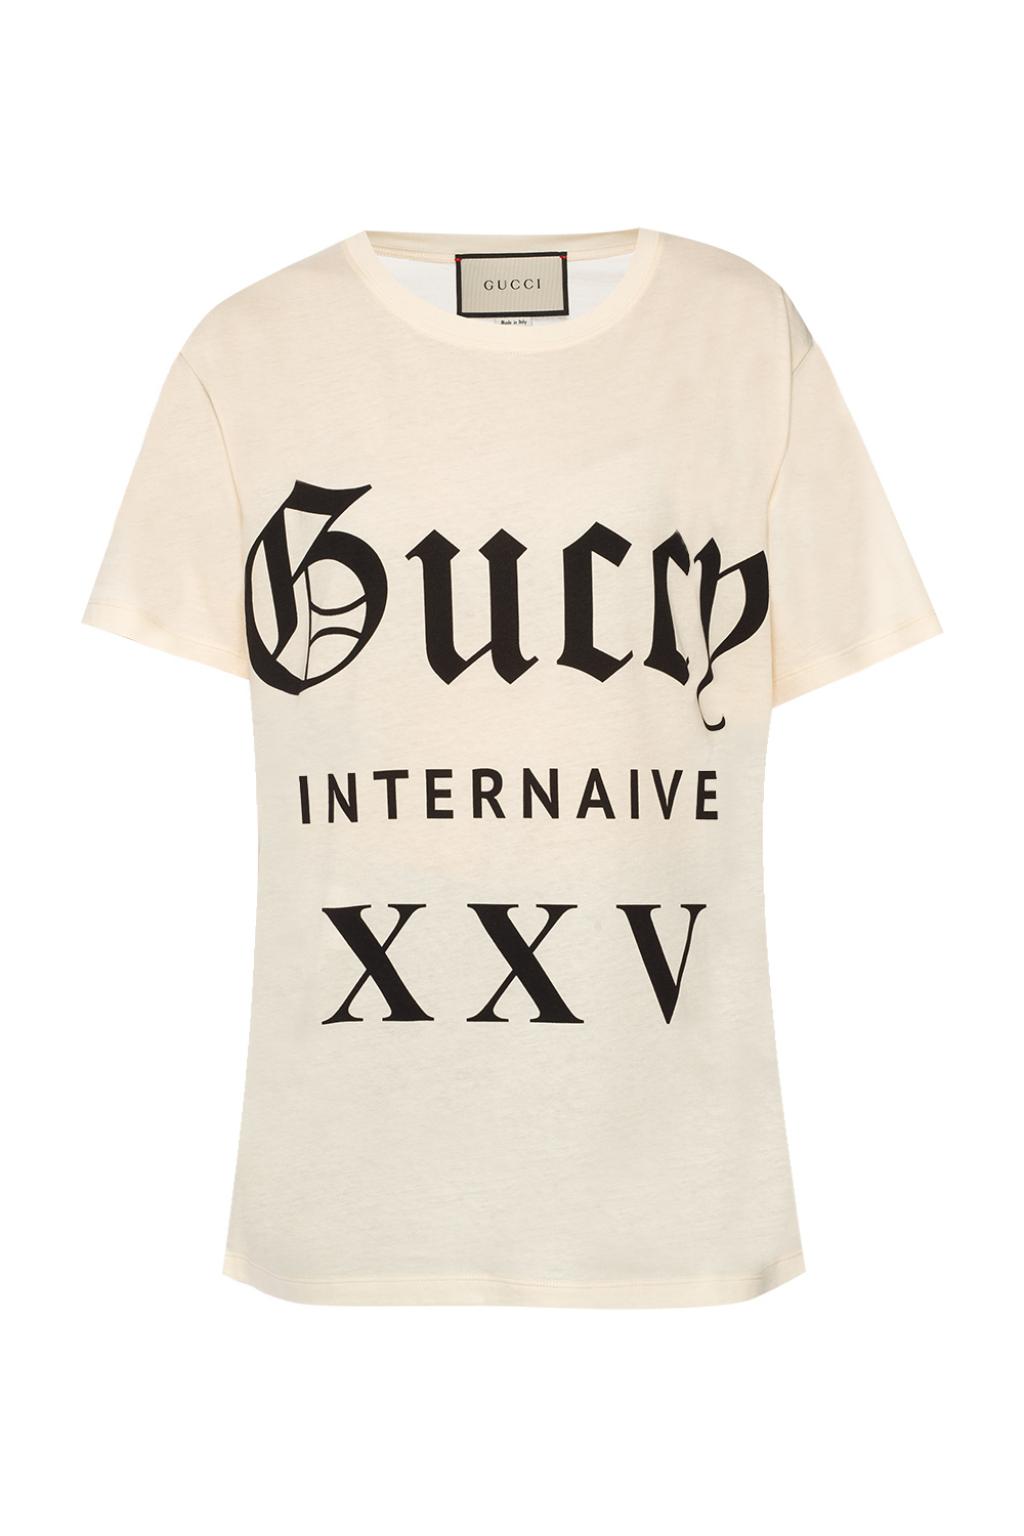 Lav et navn skylle afbryde Printed T-shirt Gucci - Vitkac US